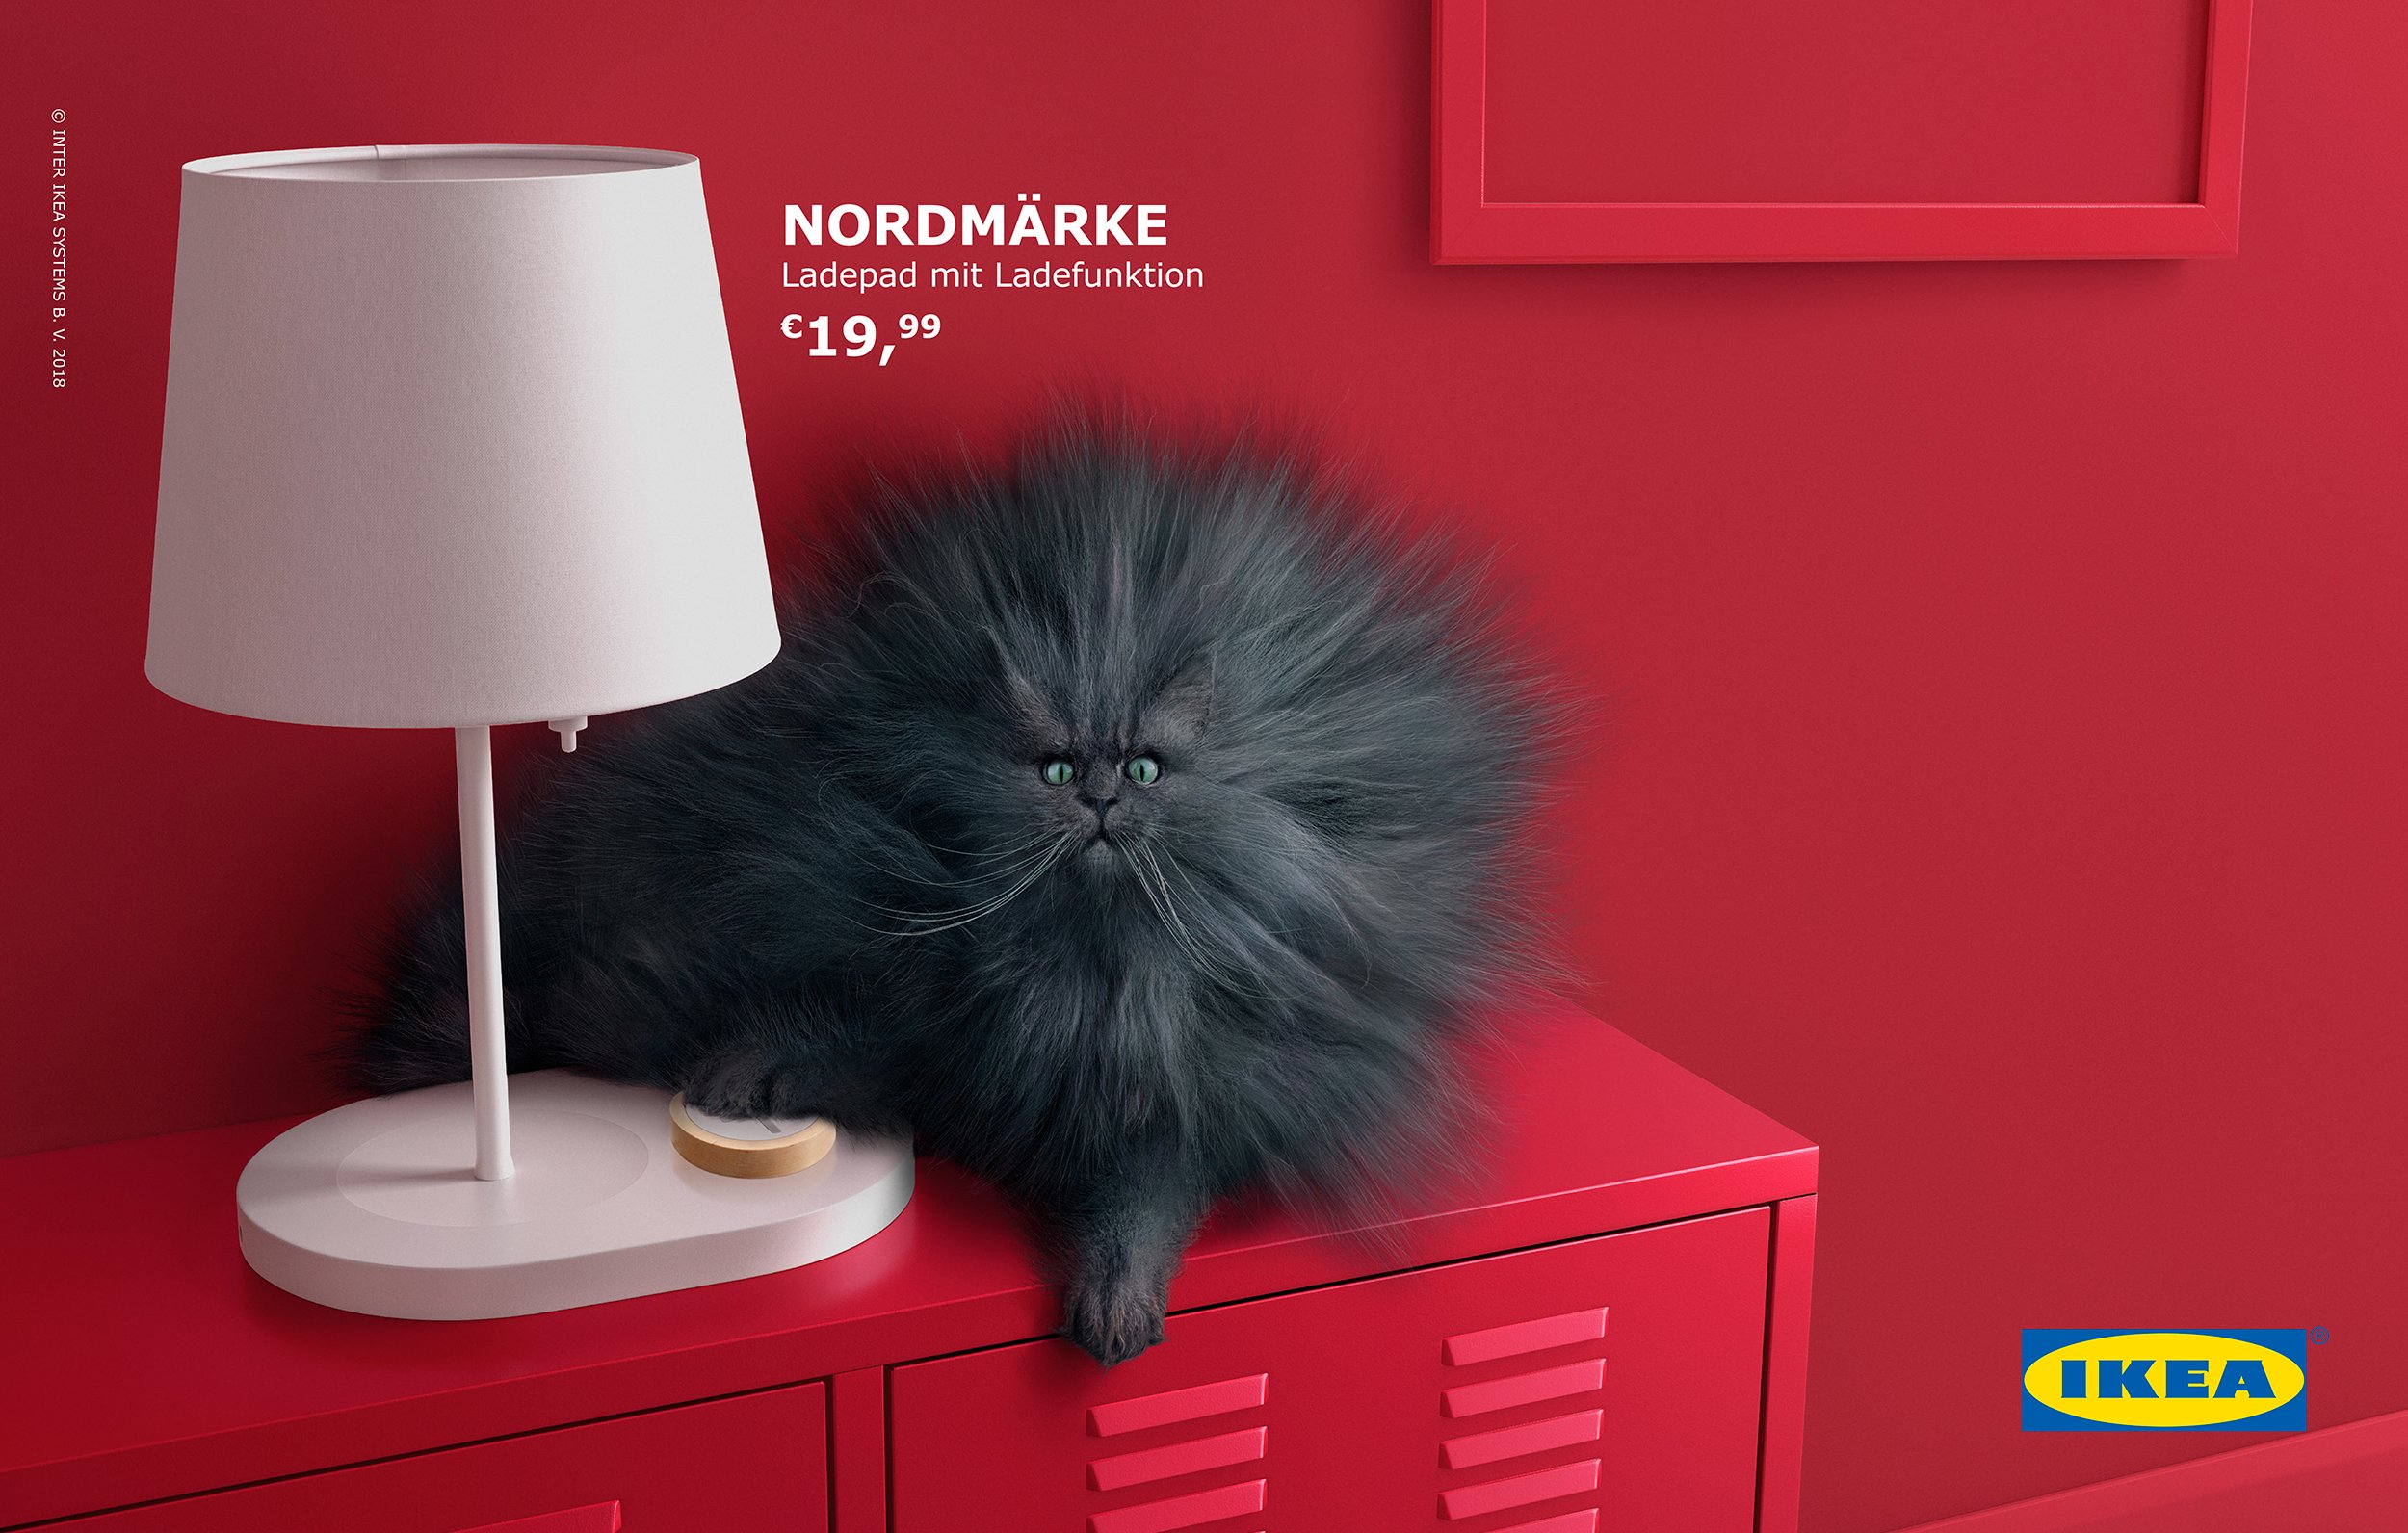 Ikea_Cats_Press_Hallway_Srgb.jpg